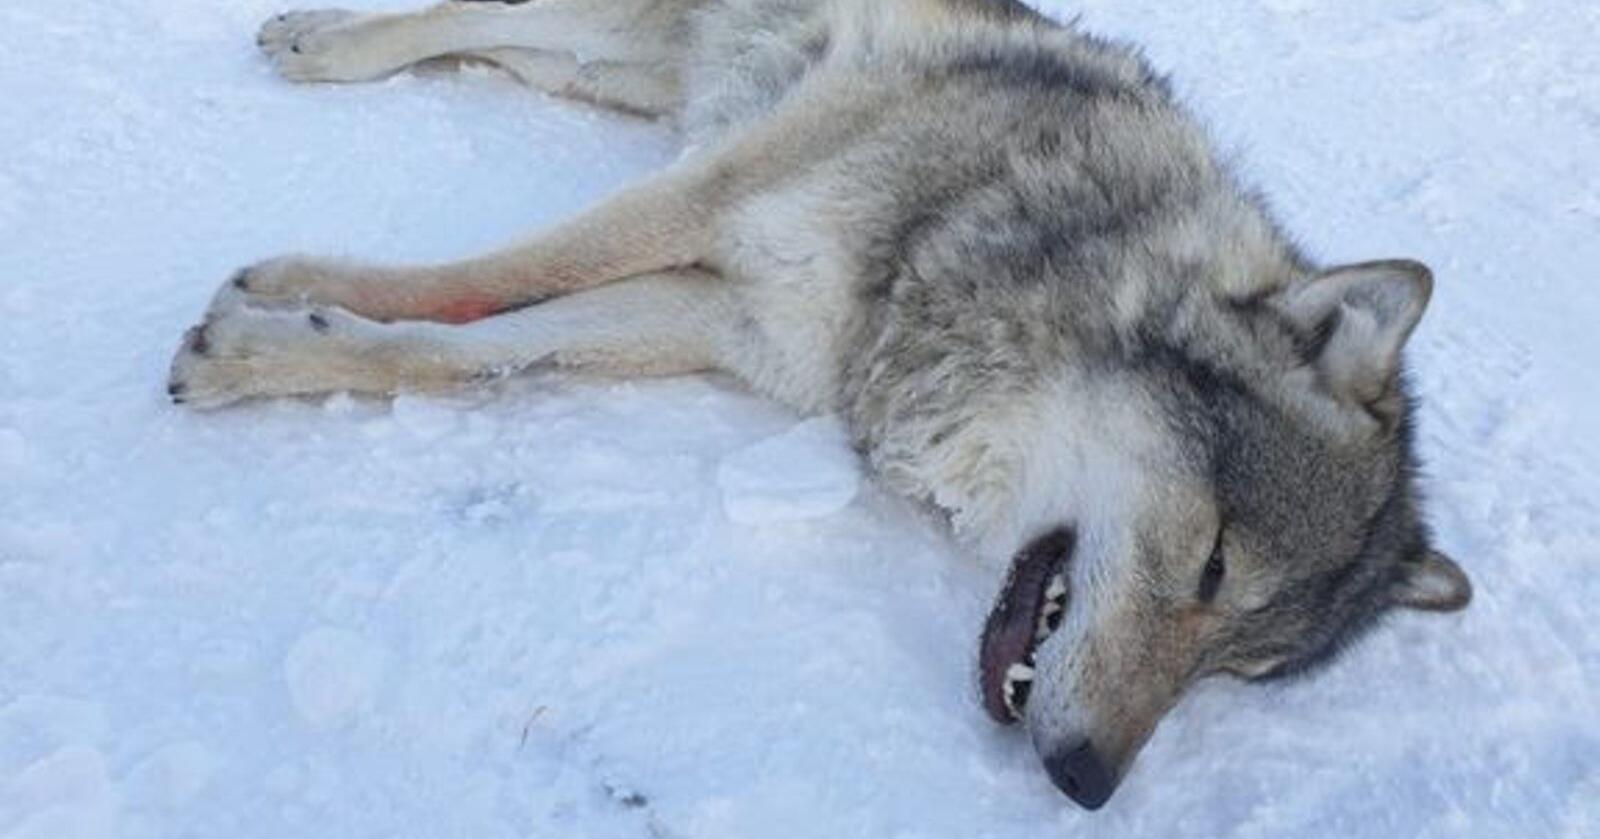 Ulven som ble bedøvet og flyttet 14. november i fjor. Foto: Statens naturoppsyn/Miljødirektoratet.